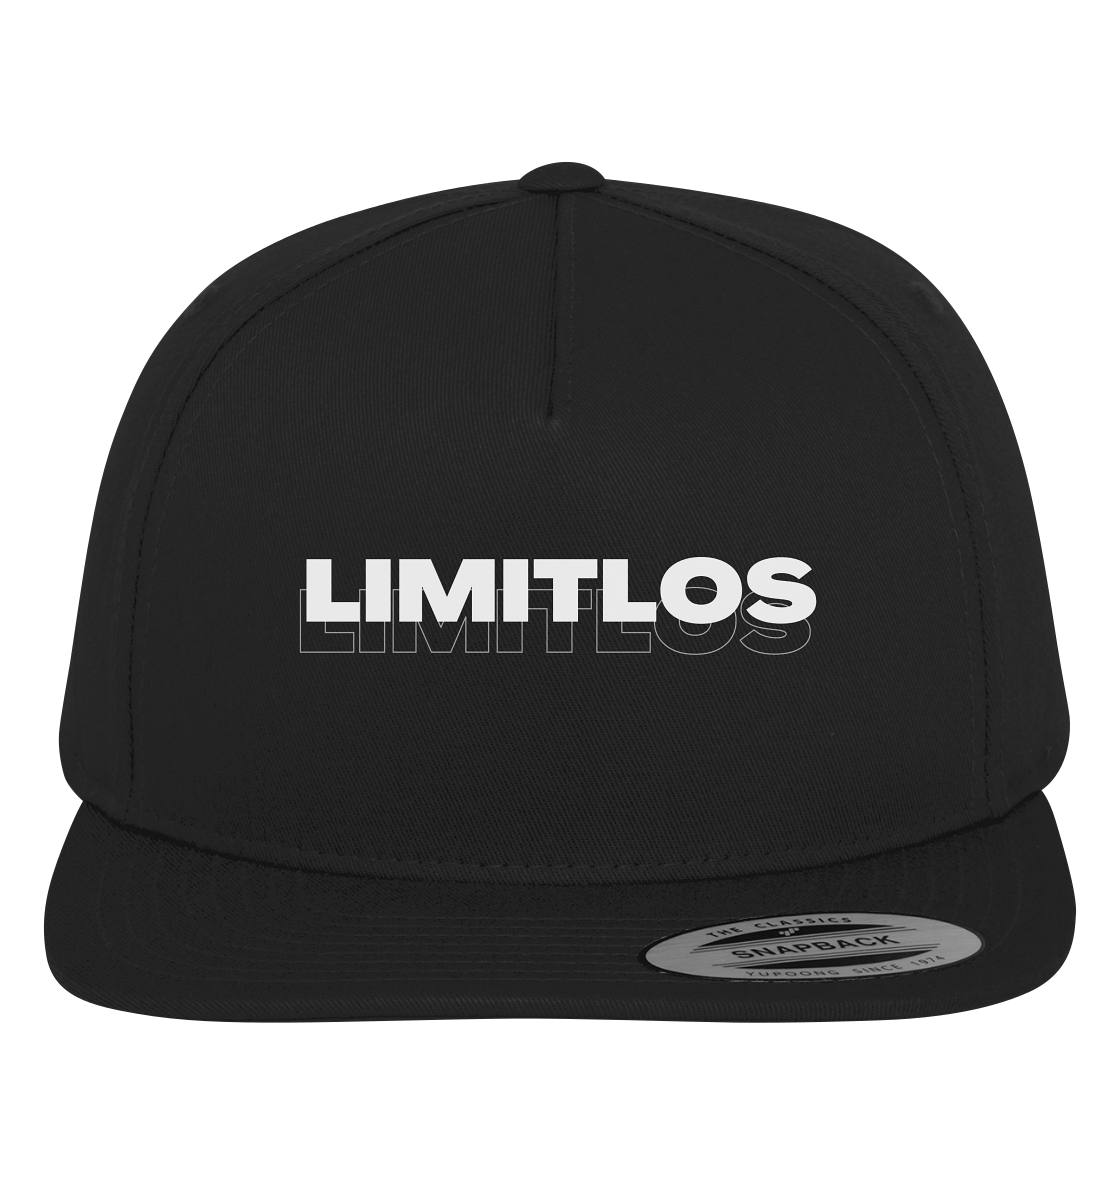 LIMITLOS COLLECTION - Premium Snapback